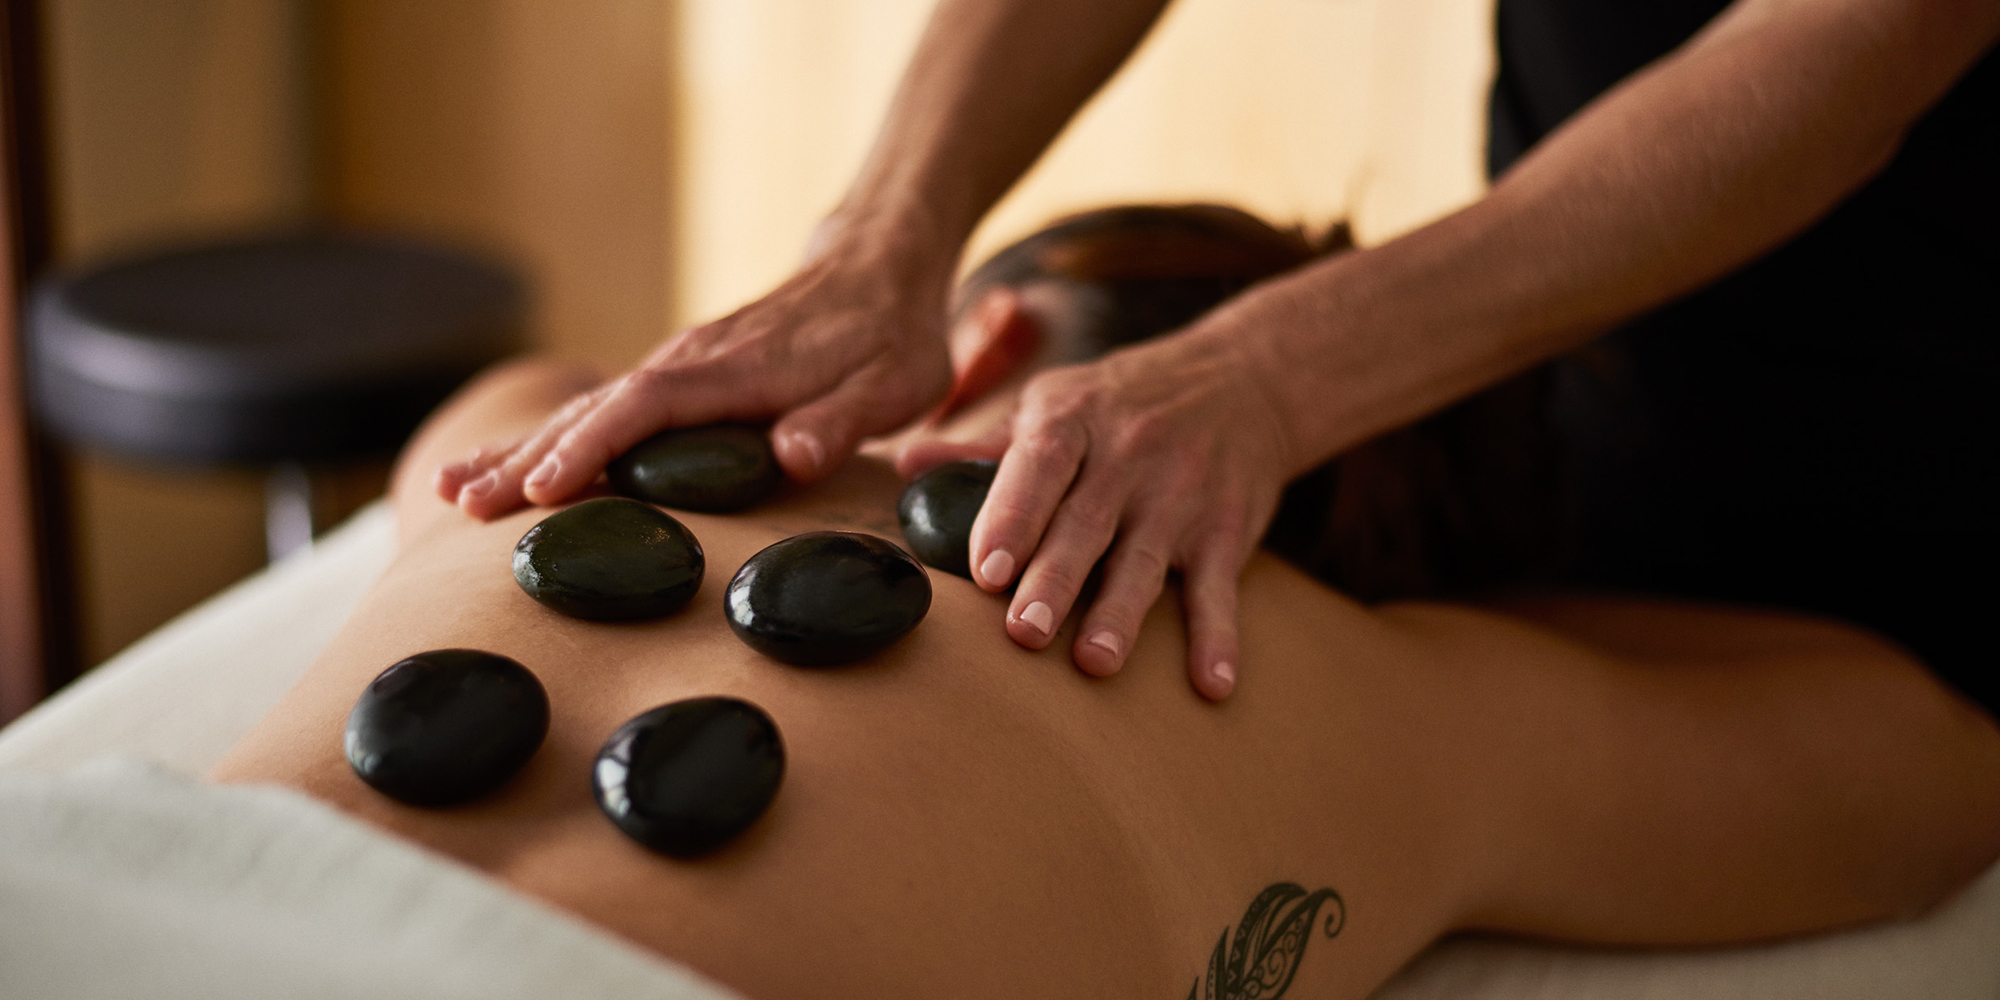 Hot stone massage 